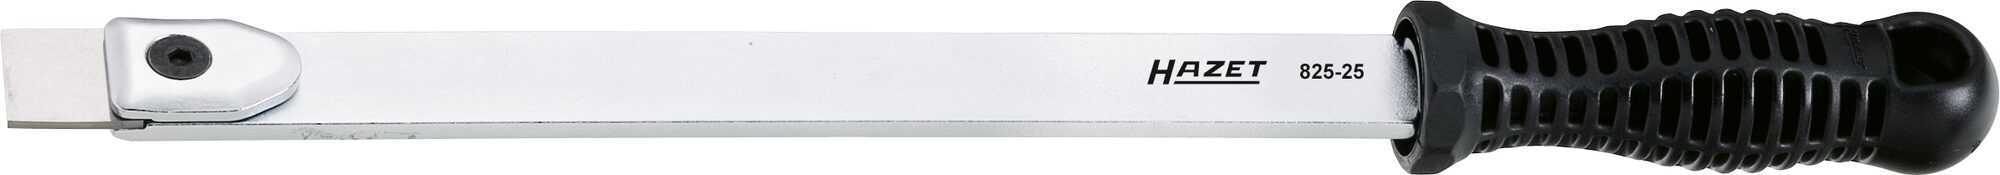 HAZET Flachschaber 825-25 · Flachprofil · 2 x 25 mm